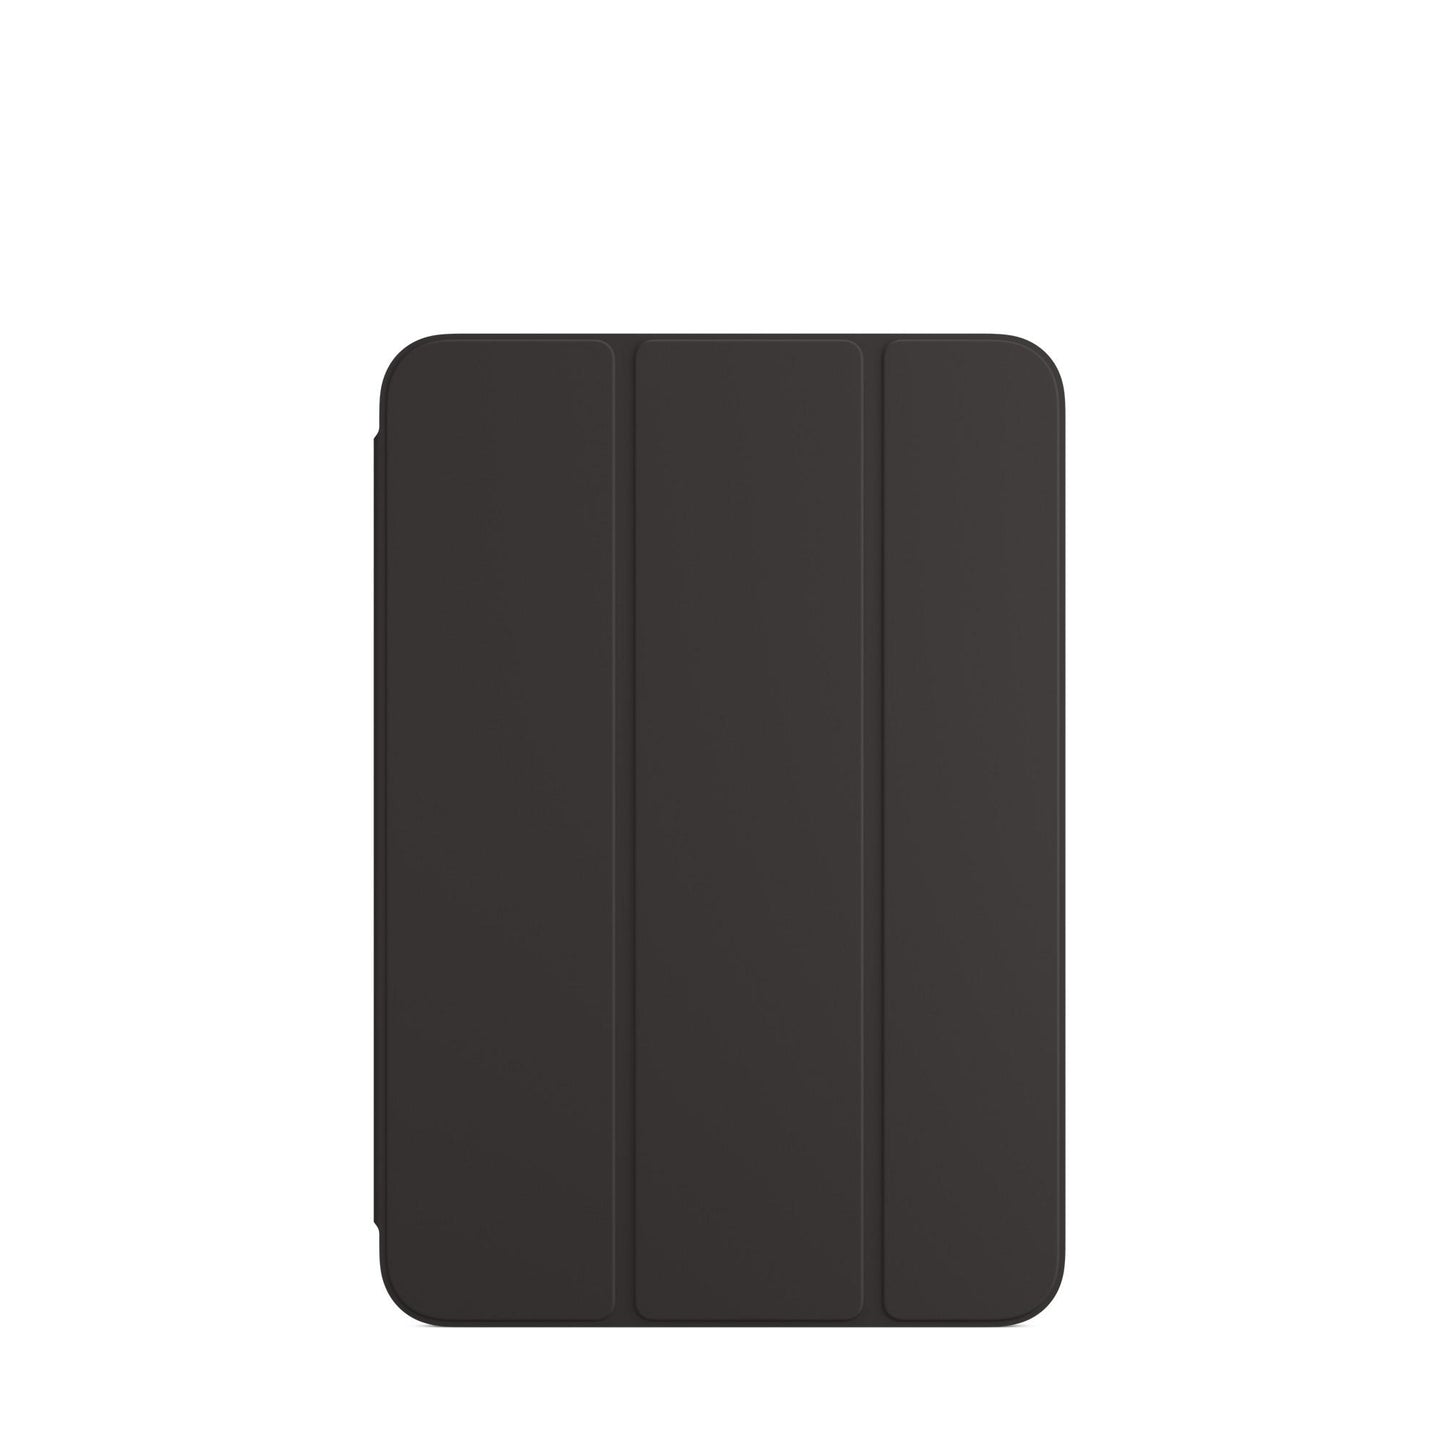 المحفظة الذكي‏ة iPad mini — أسود